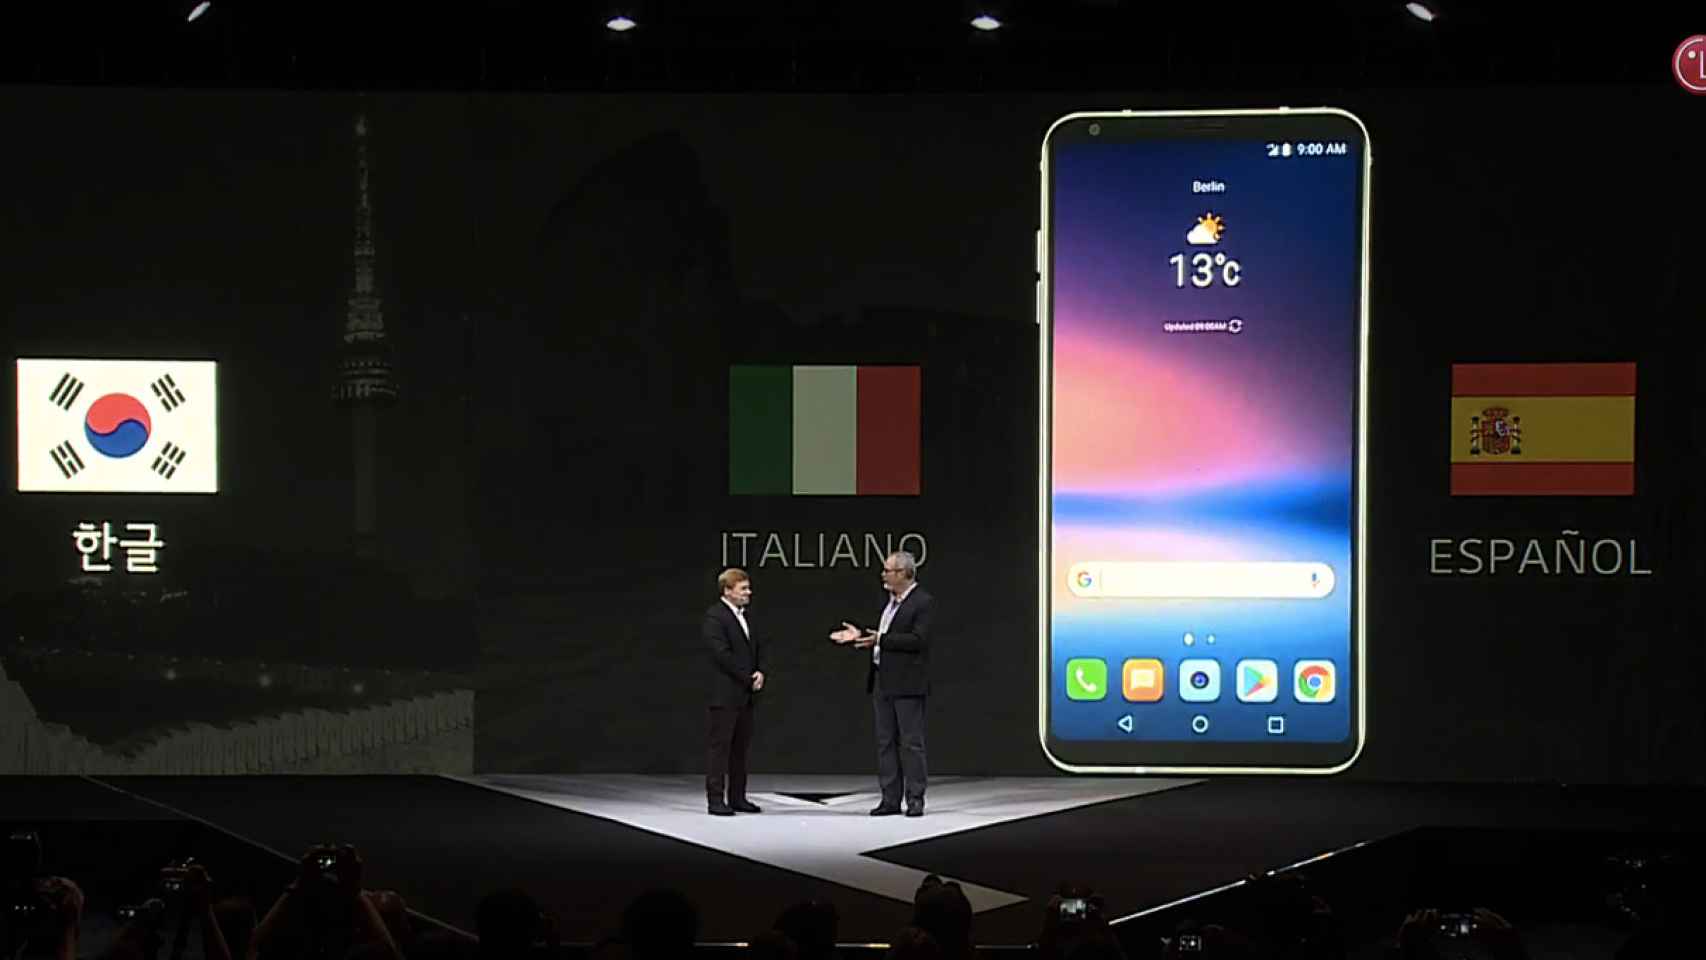 El español llegará a los comandos de voz de Google Assistant en el LG V30